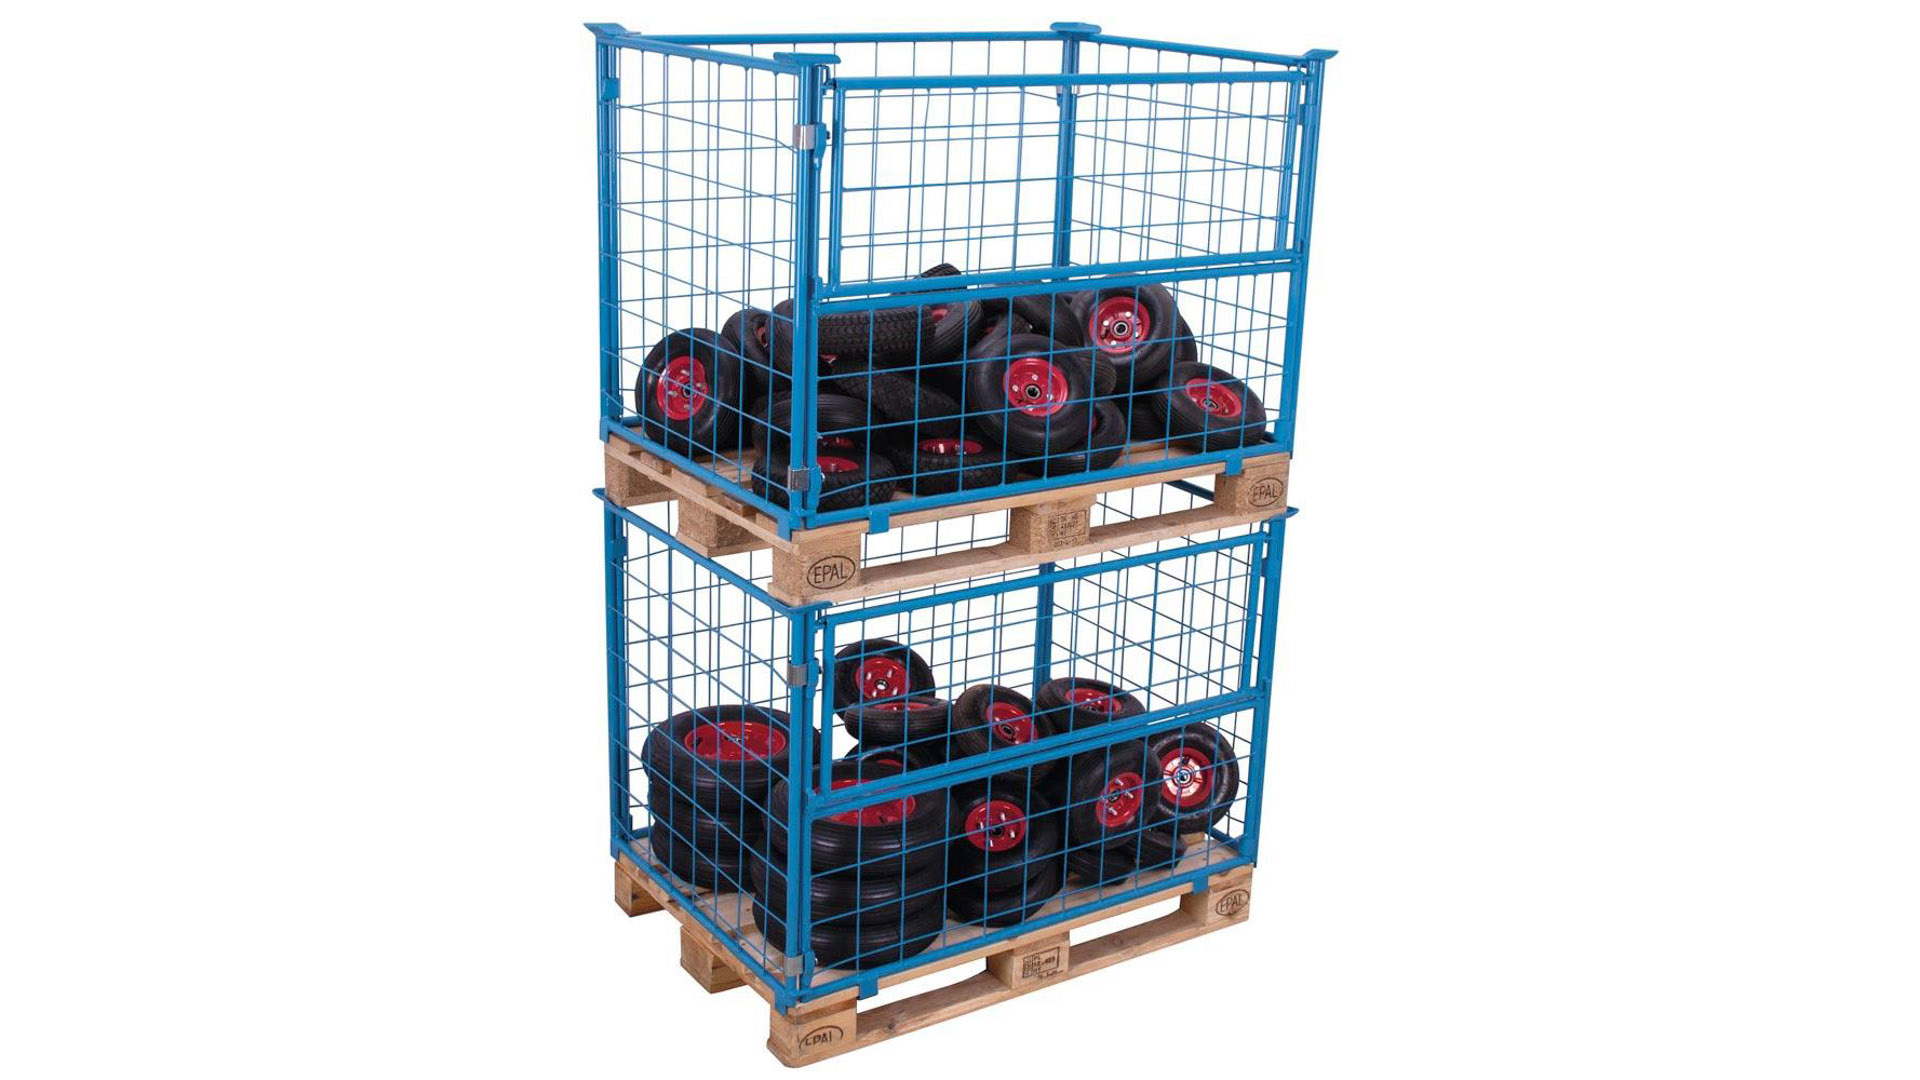 Palettenaufsatzrahmen für Industriepalette - 1.000 kg - Höhe 800 mm - 4-fach stapelbar - Gitter 1x klappbar - lichtblau